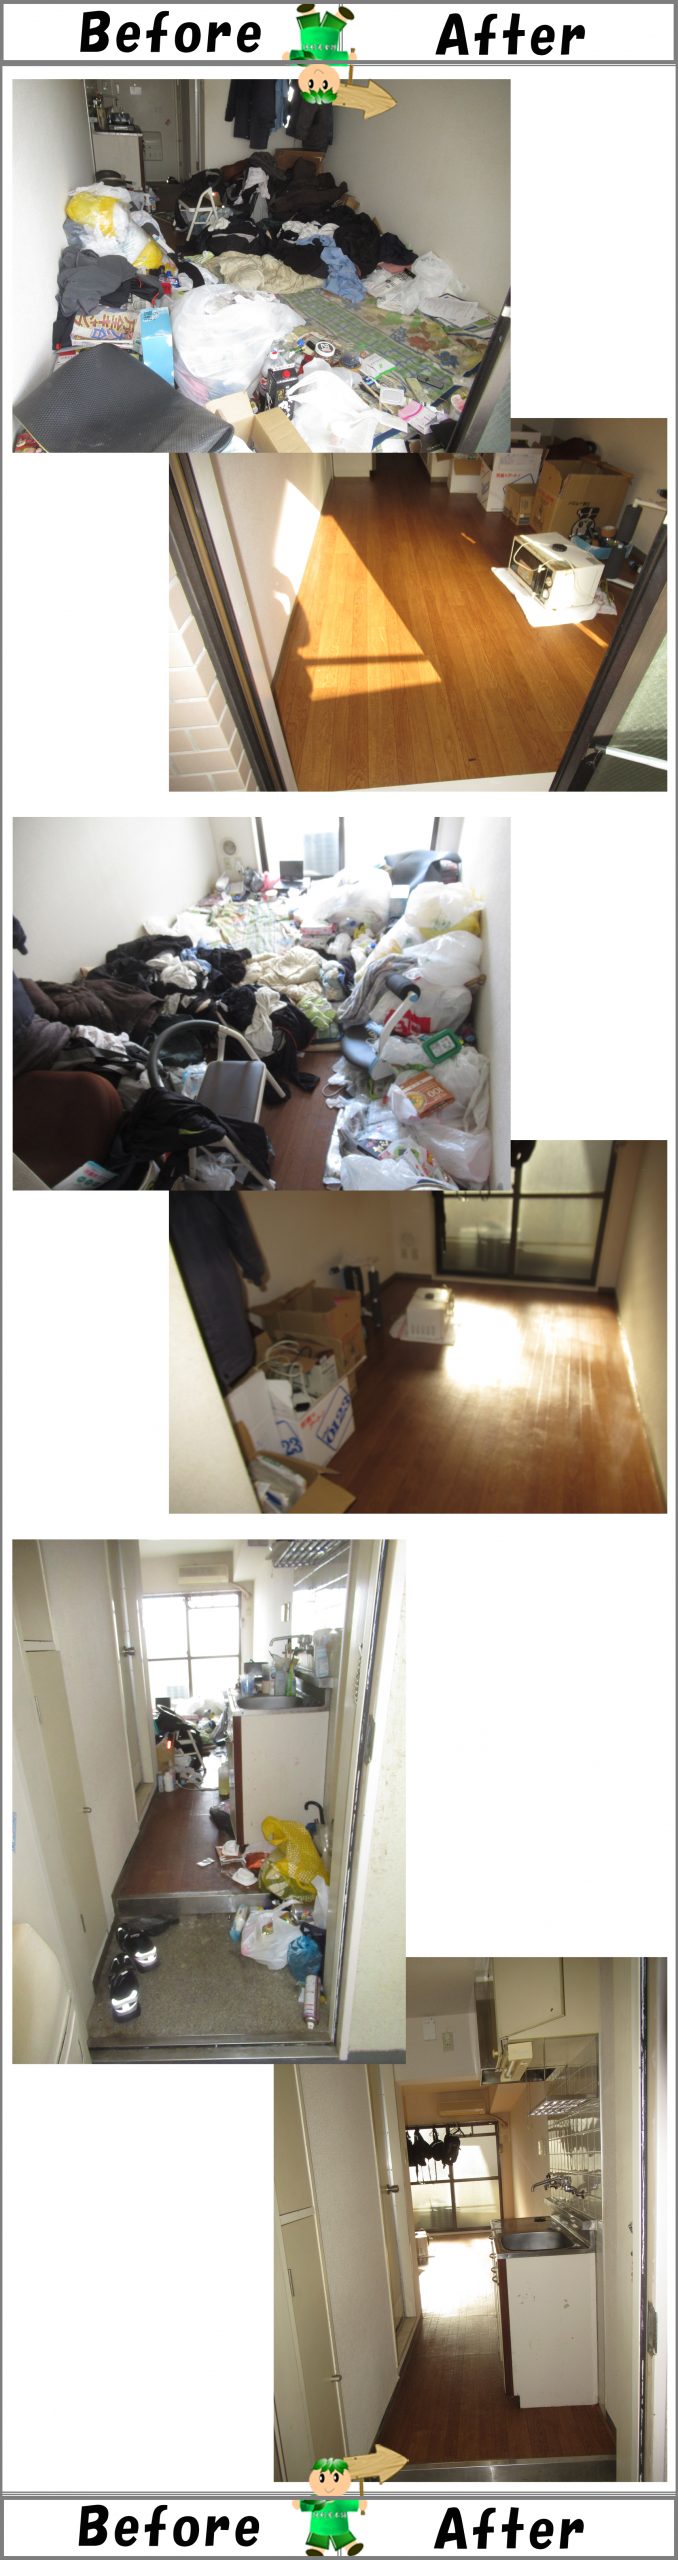 不用品・モノが散らかったお部屋の片付け、清掃作業